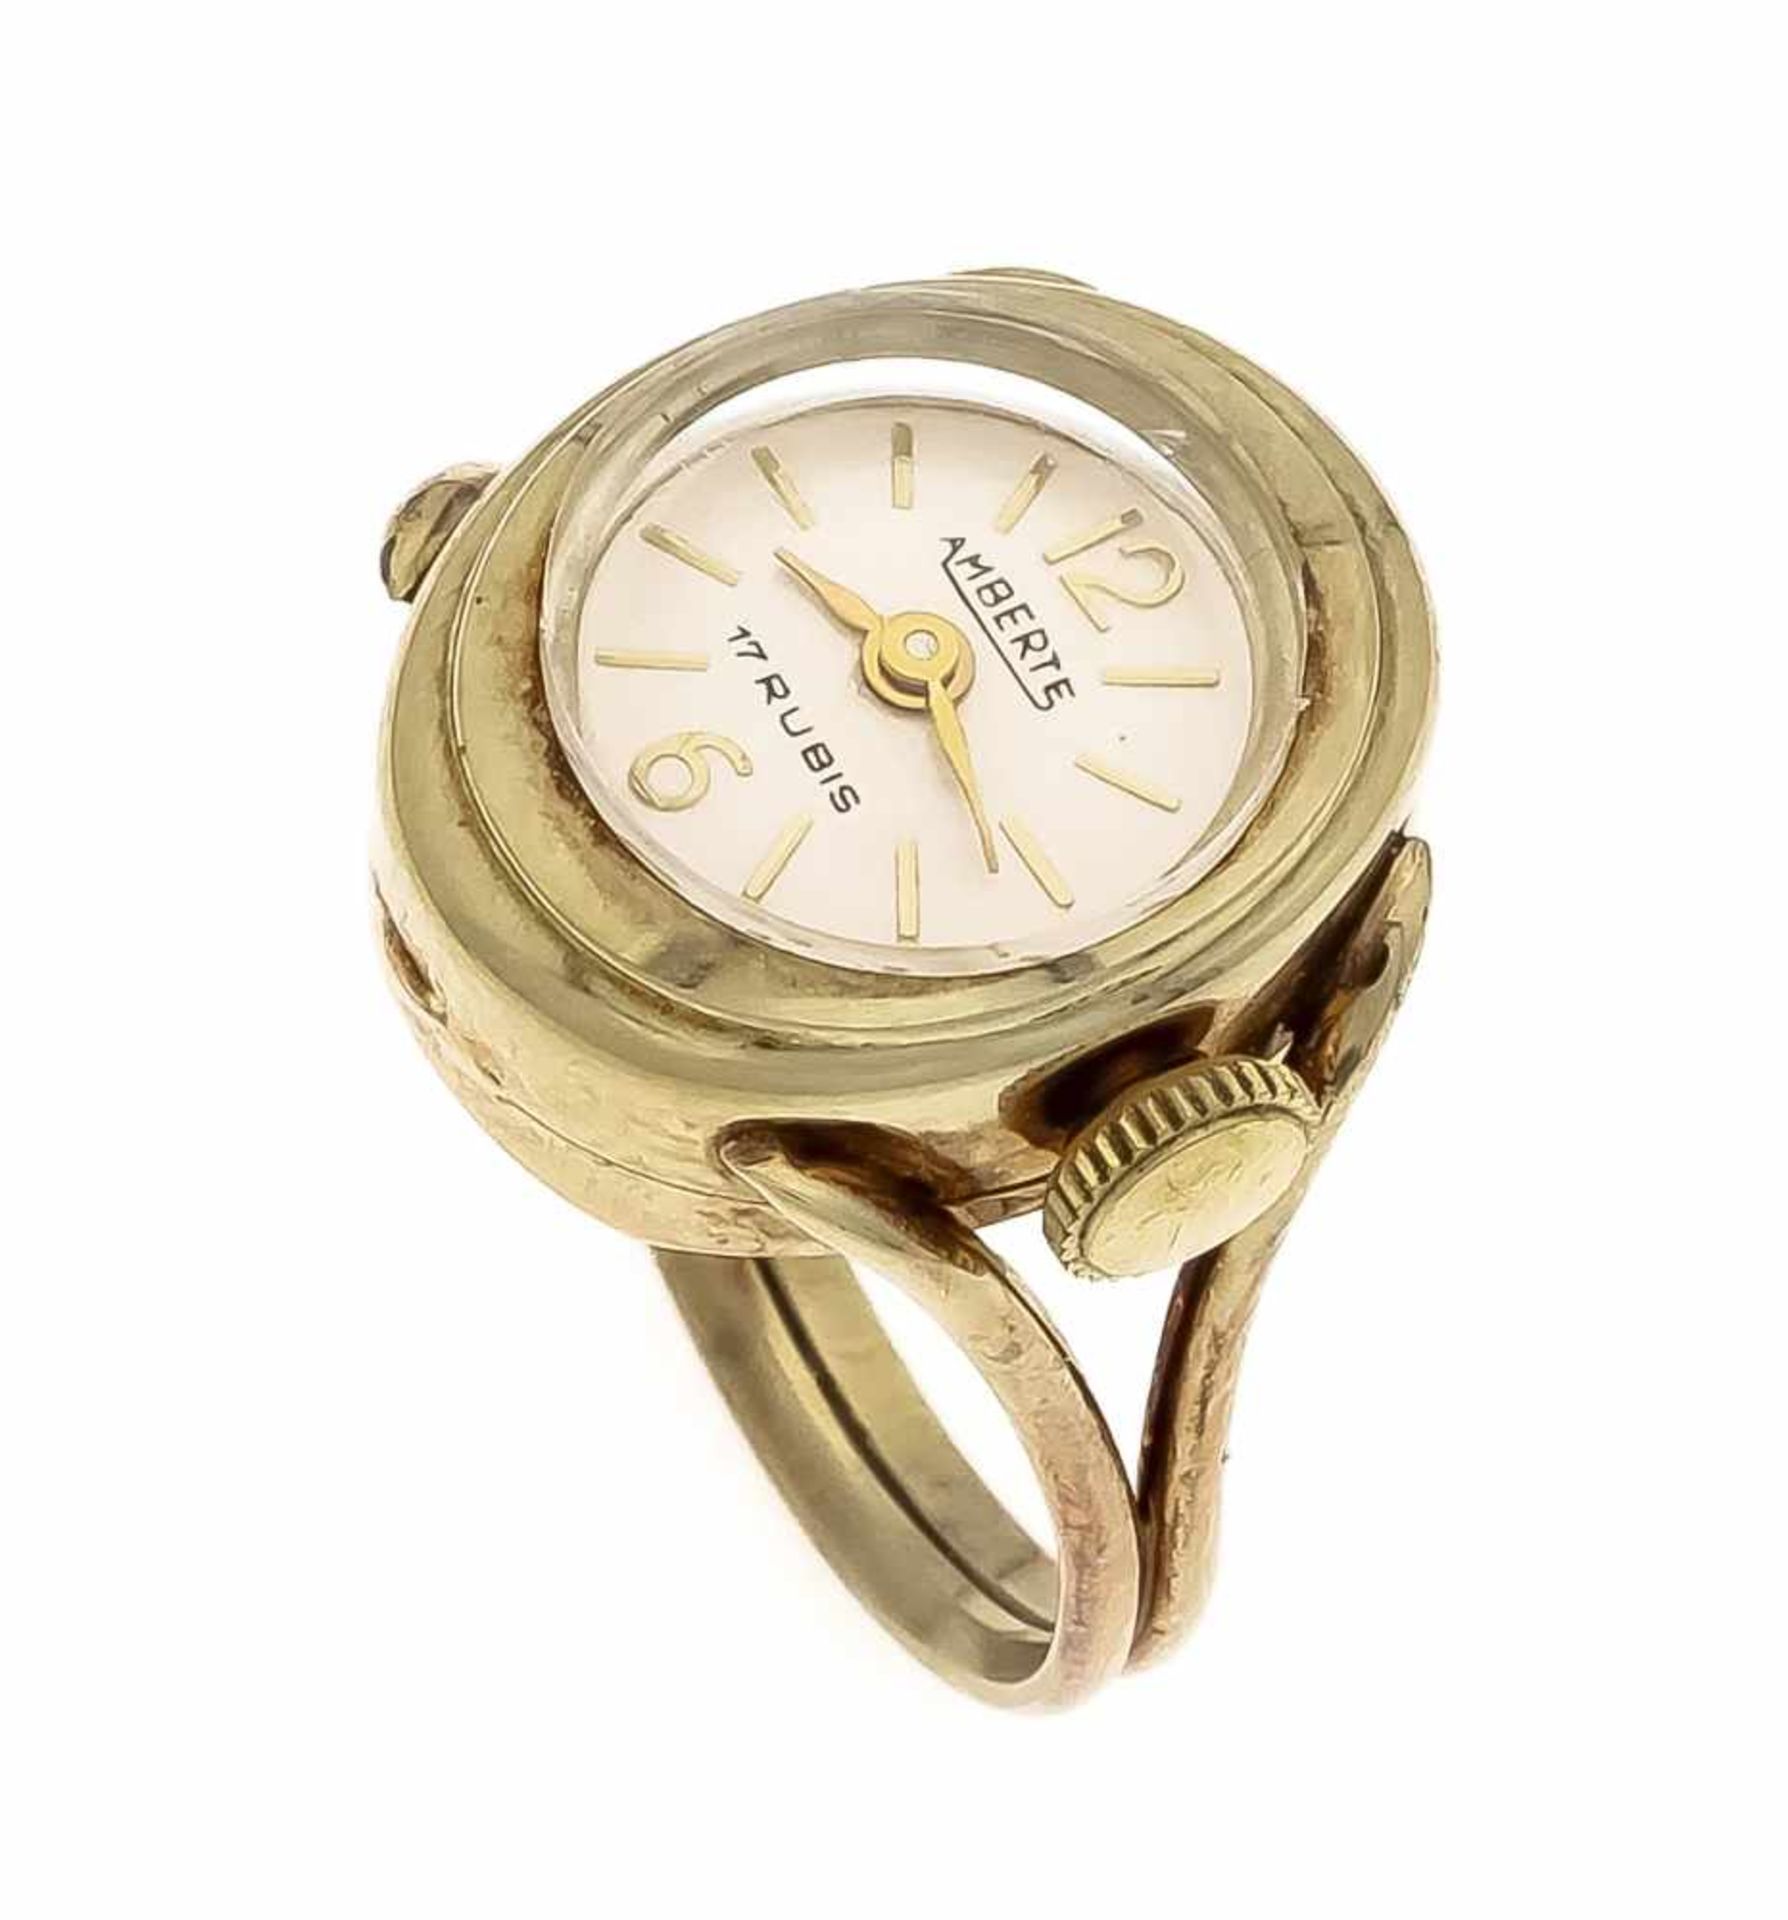 Uhren-Ring GG 585/000 mit einer Uhr, Amberte, Handaufzug, 17 Rubine, D. 17 x 16 mm, läuft,RG 54, 6,2